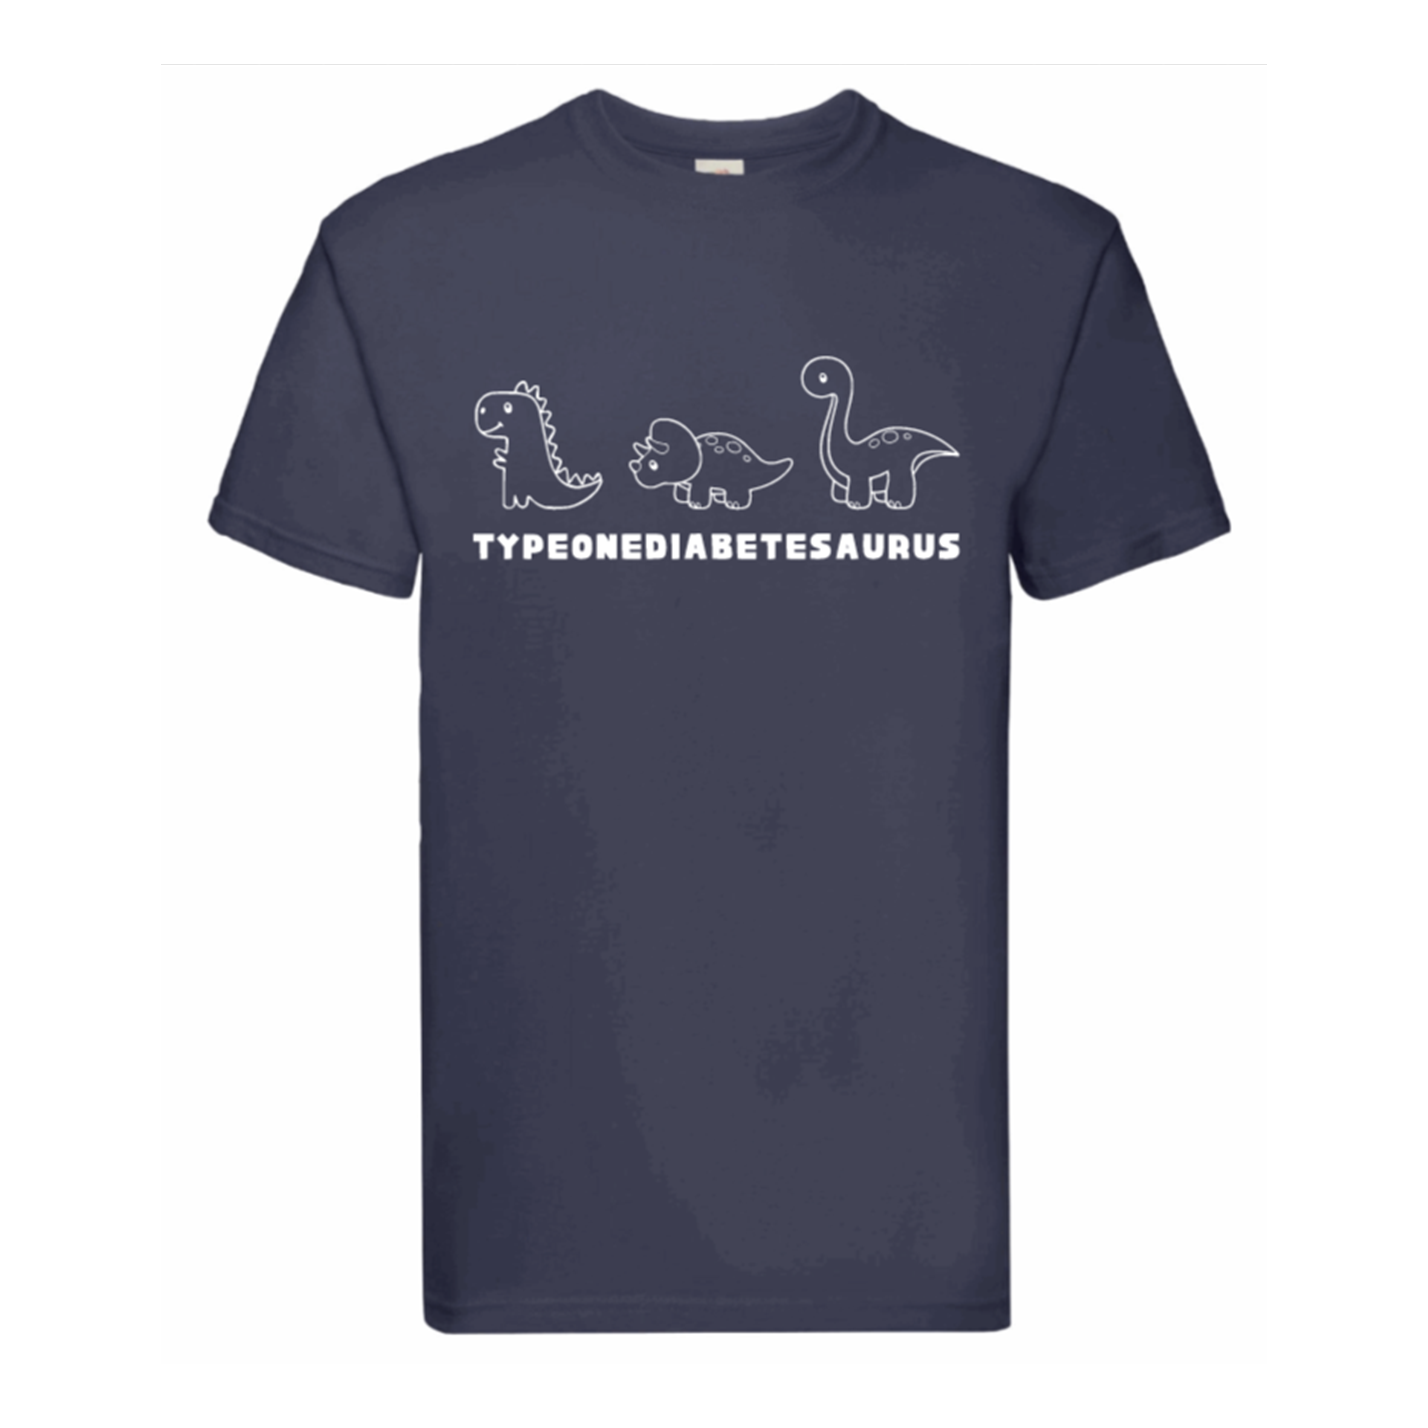 Typeonediabetesaurus Kids T Shirt